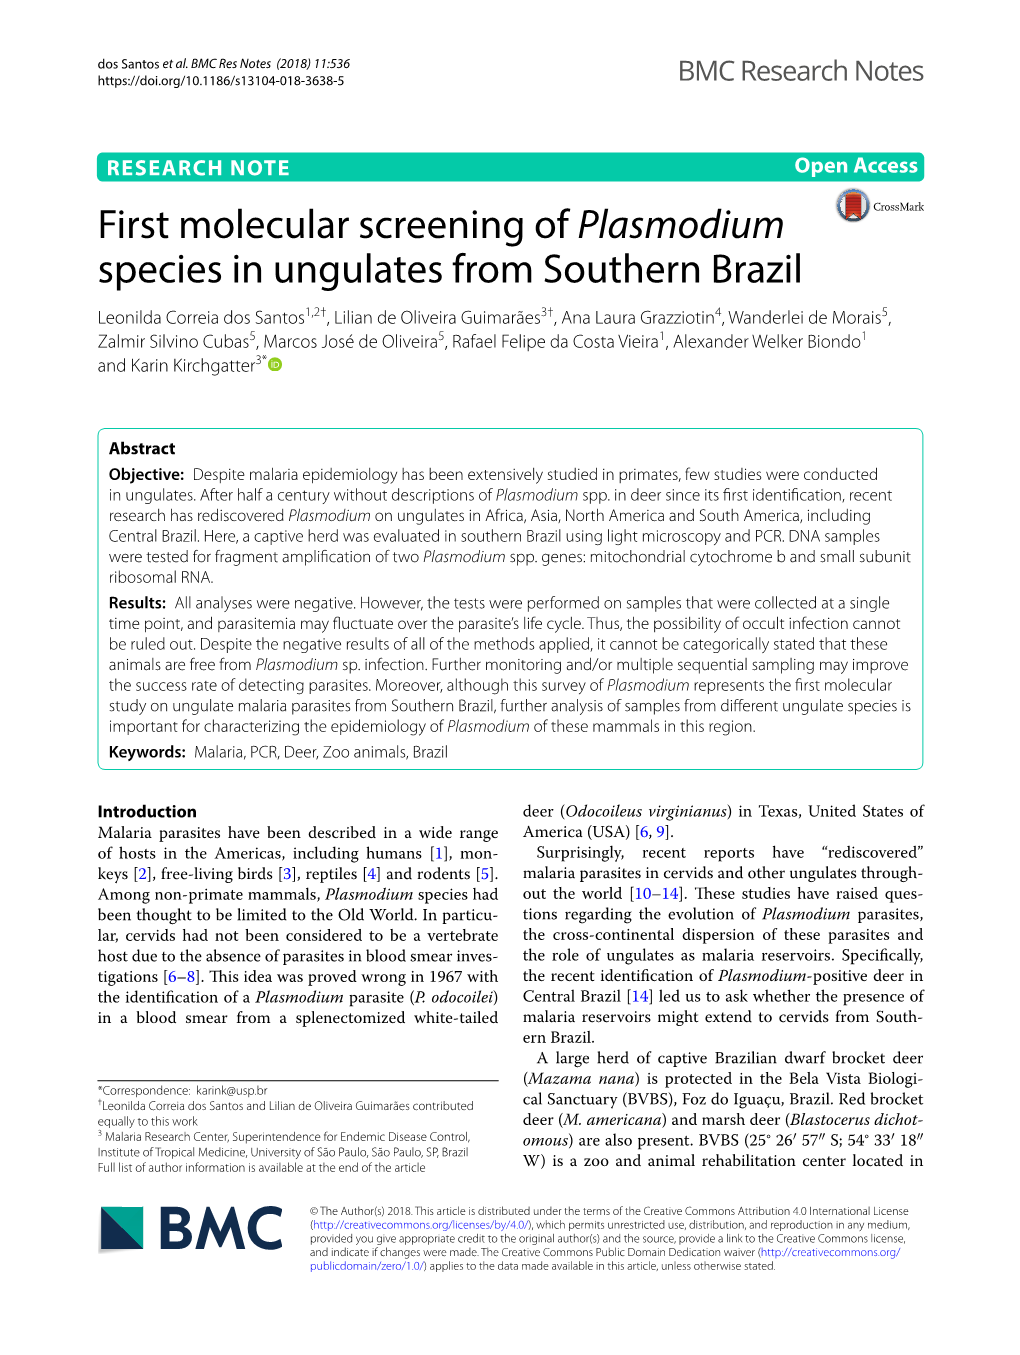 First Molecular Screening of Plasmodium Species in Ungulates